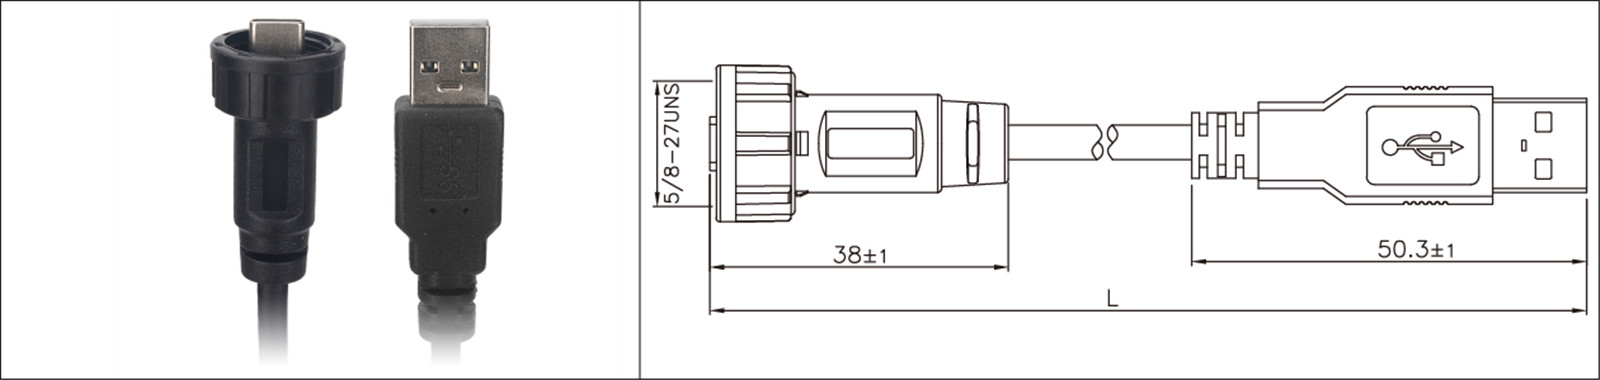 Mikro USB paneleko muntaketa mota 2.0 3.0 emea eta gizonezkoa iragazgaitza IP67 overmold luzapen kable industriala connecto-02 (1)